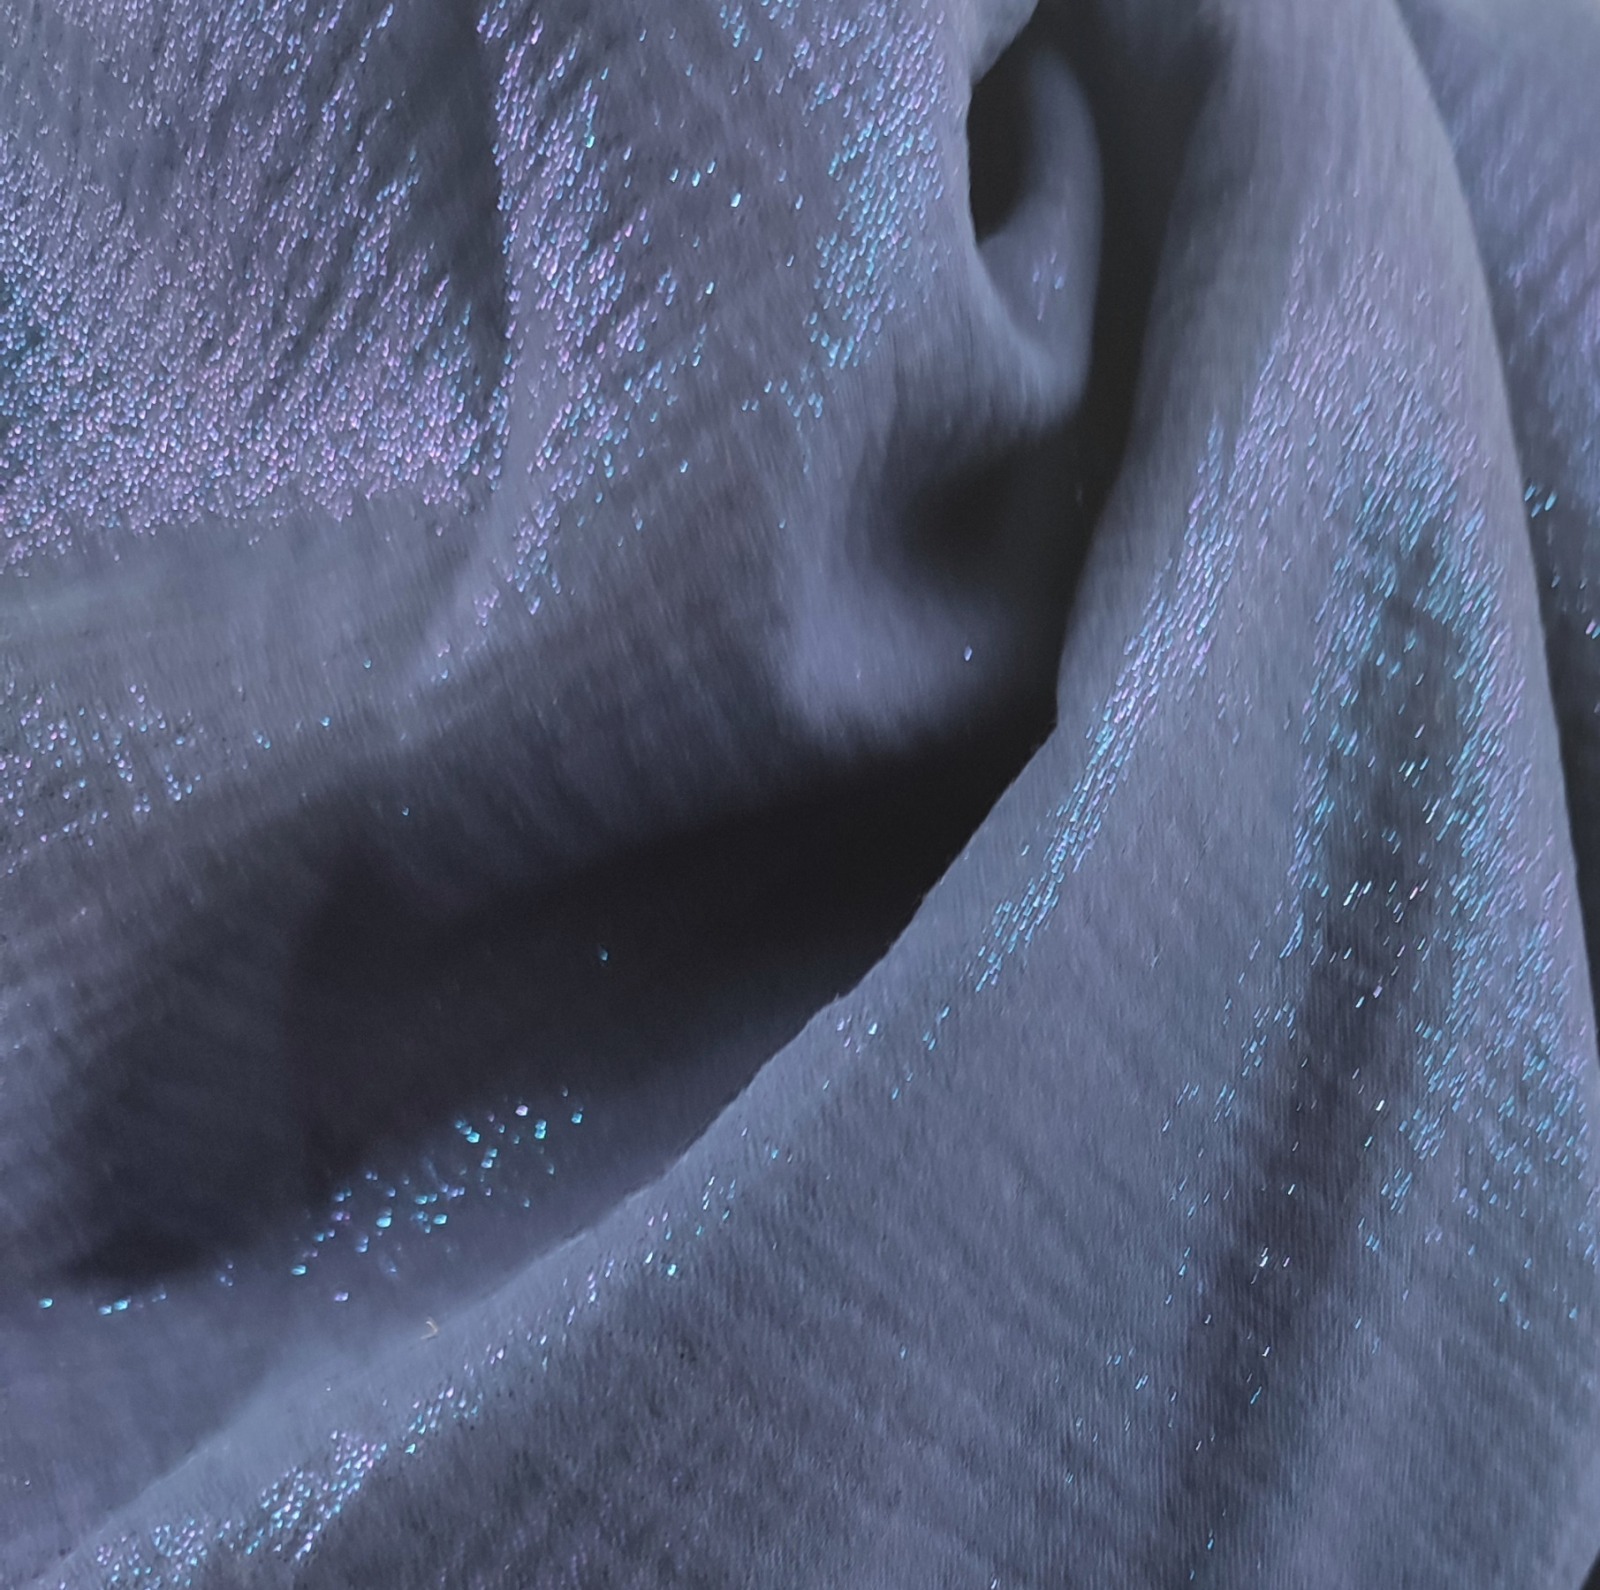 Tuch Dreieckstuch Musselin dunkelblau mit Glitzer, Schal für Damen, XXL Tuch aus Baumwolle,